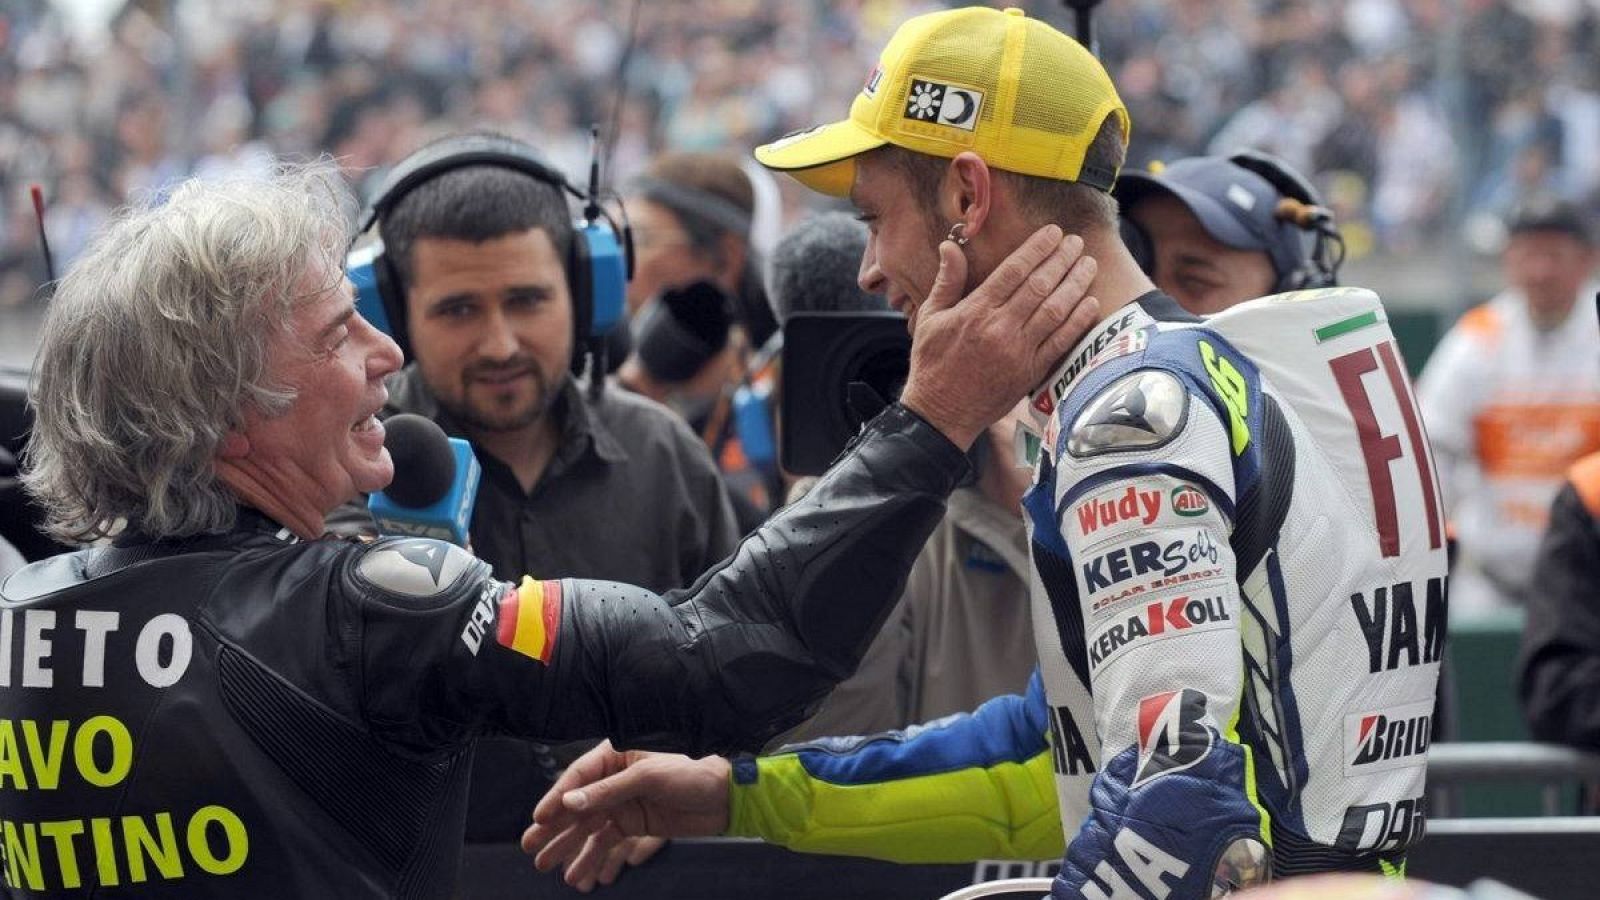  Valentino Rossi se retira de la competición después de 25 años subido a una moto